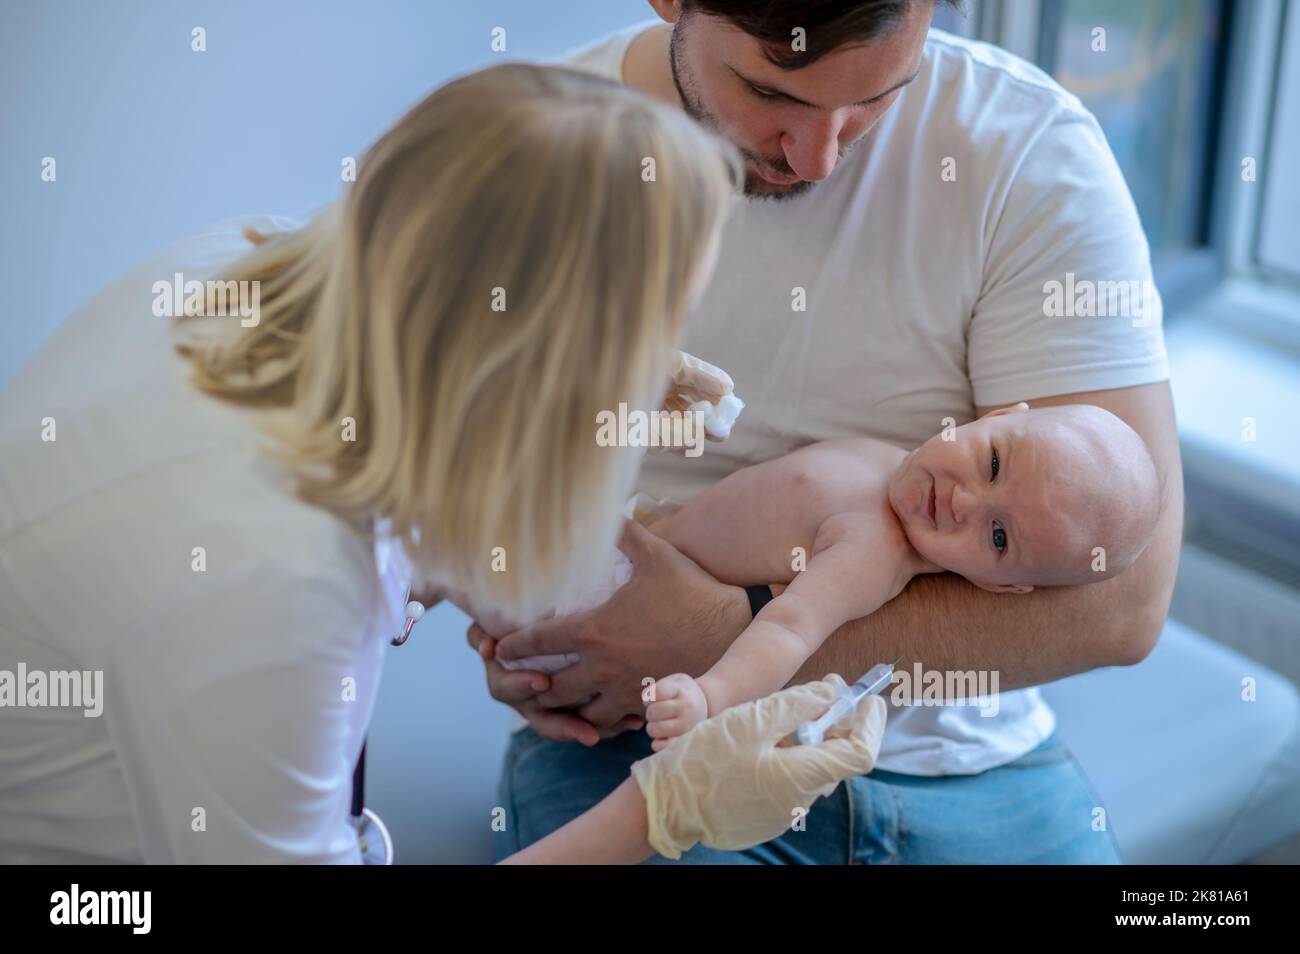 Medico pediatrico che si prepara a somministrare un'iniezione al neonato Foto Stock